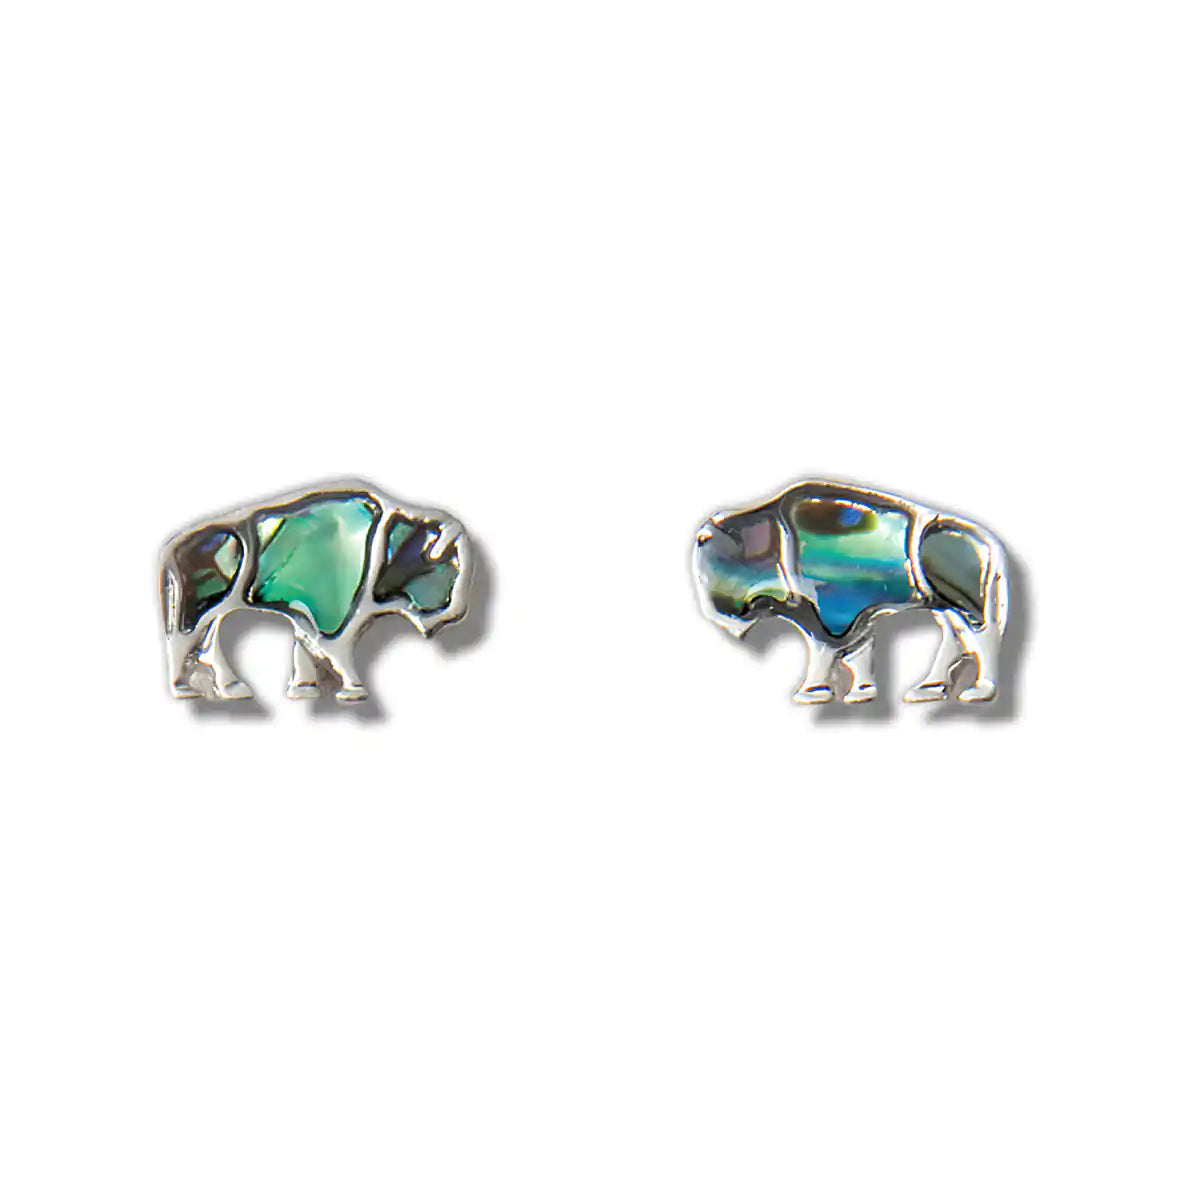 Glacier pearle buffalo earrings